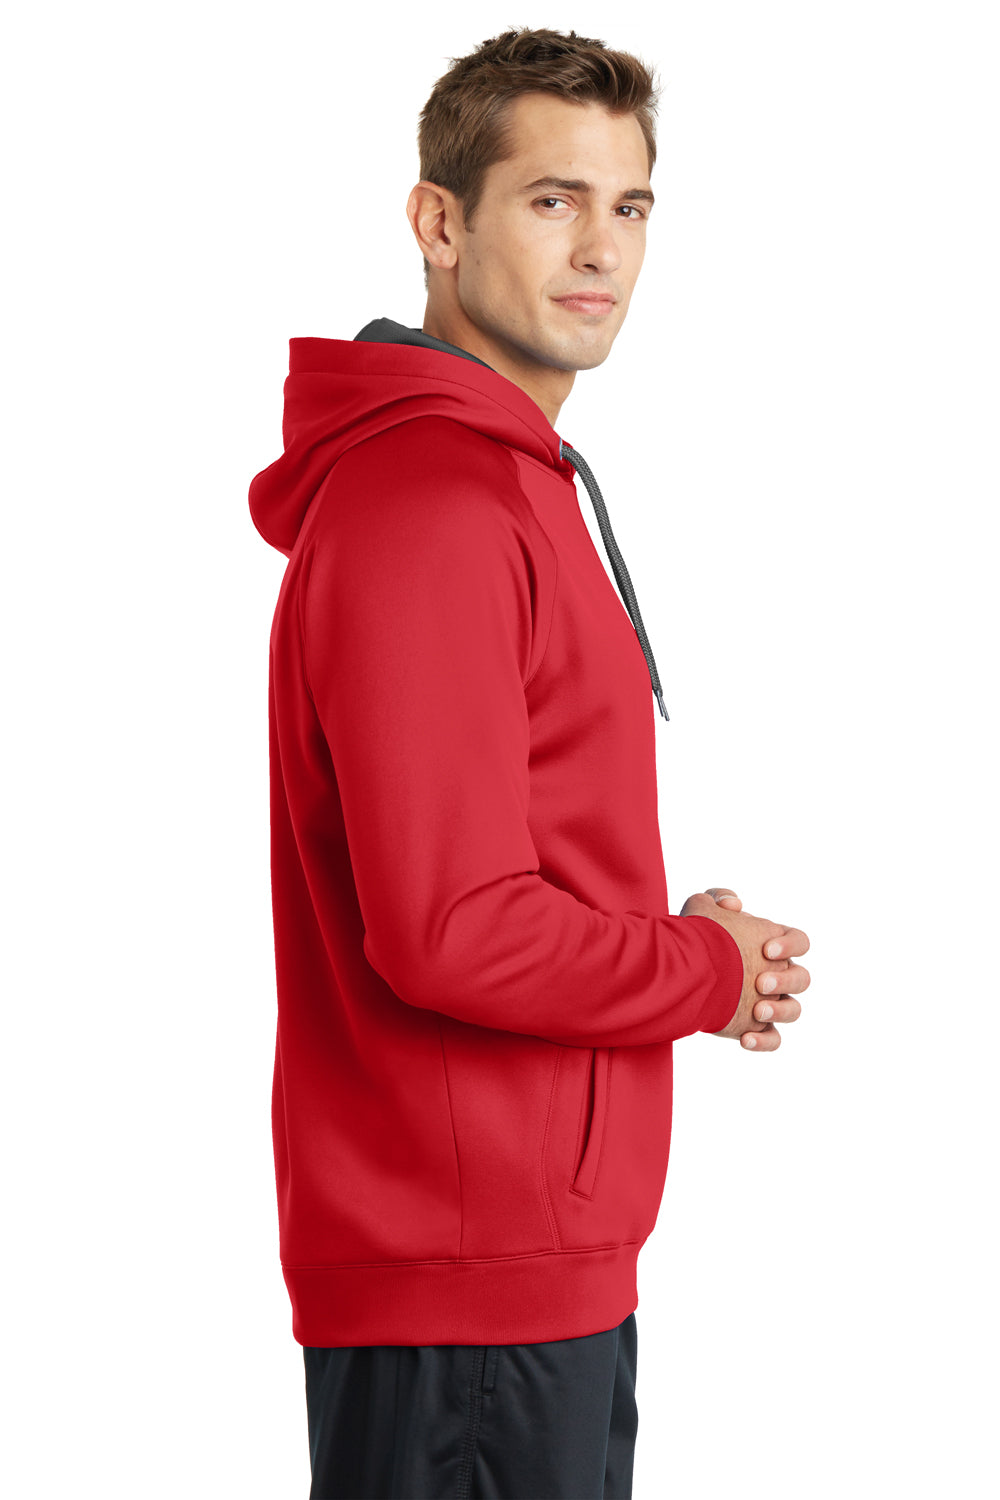 Sport-Tek ST250 Mens Tech Moisture Wicking Fleece Hooded Sweatshirt Hoodie Red Side